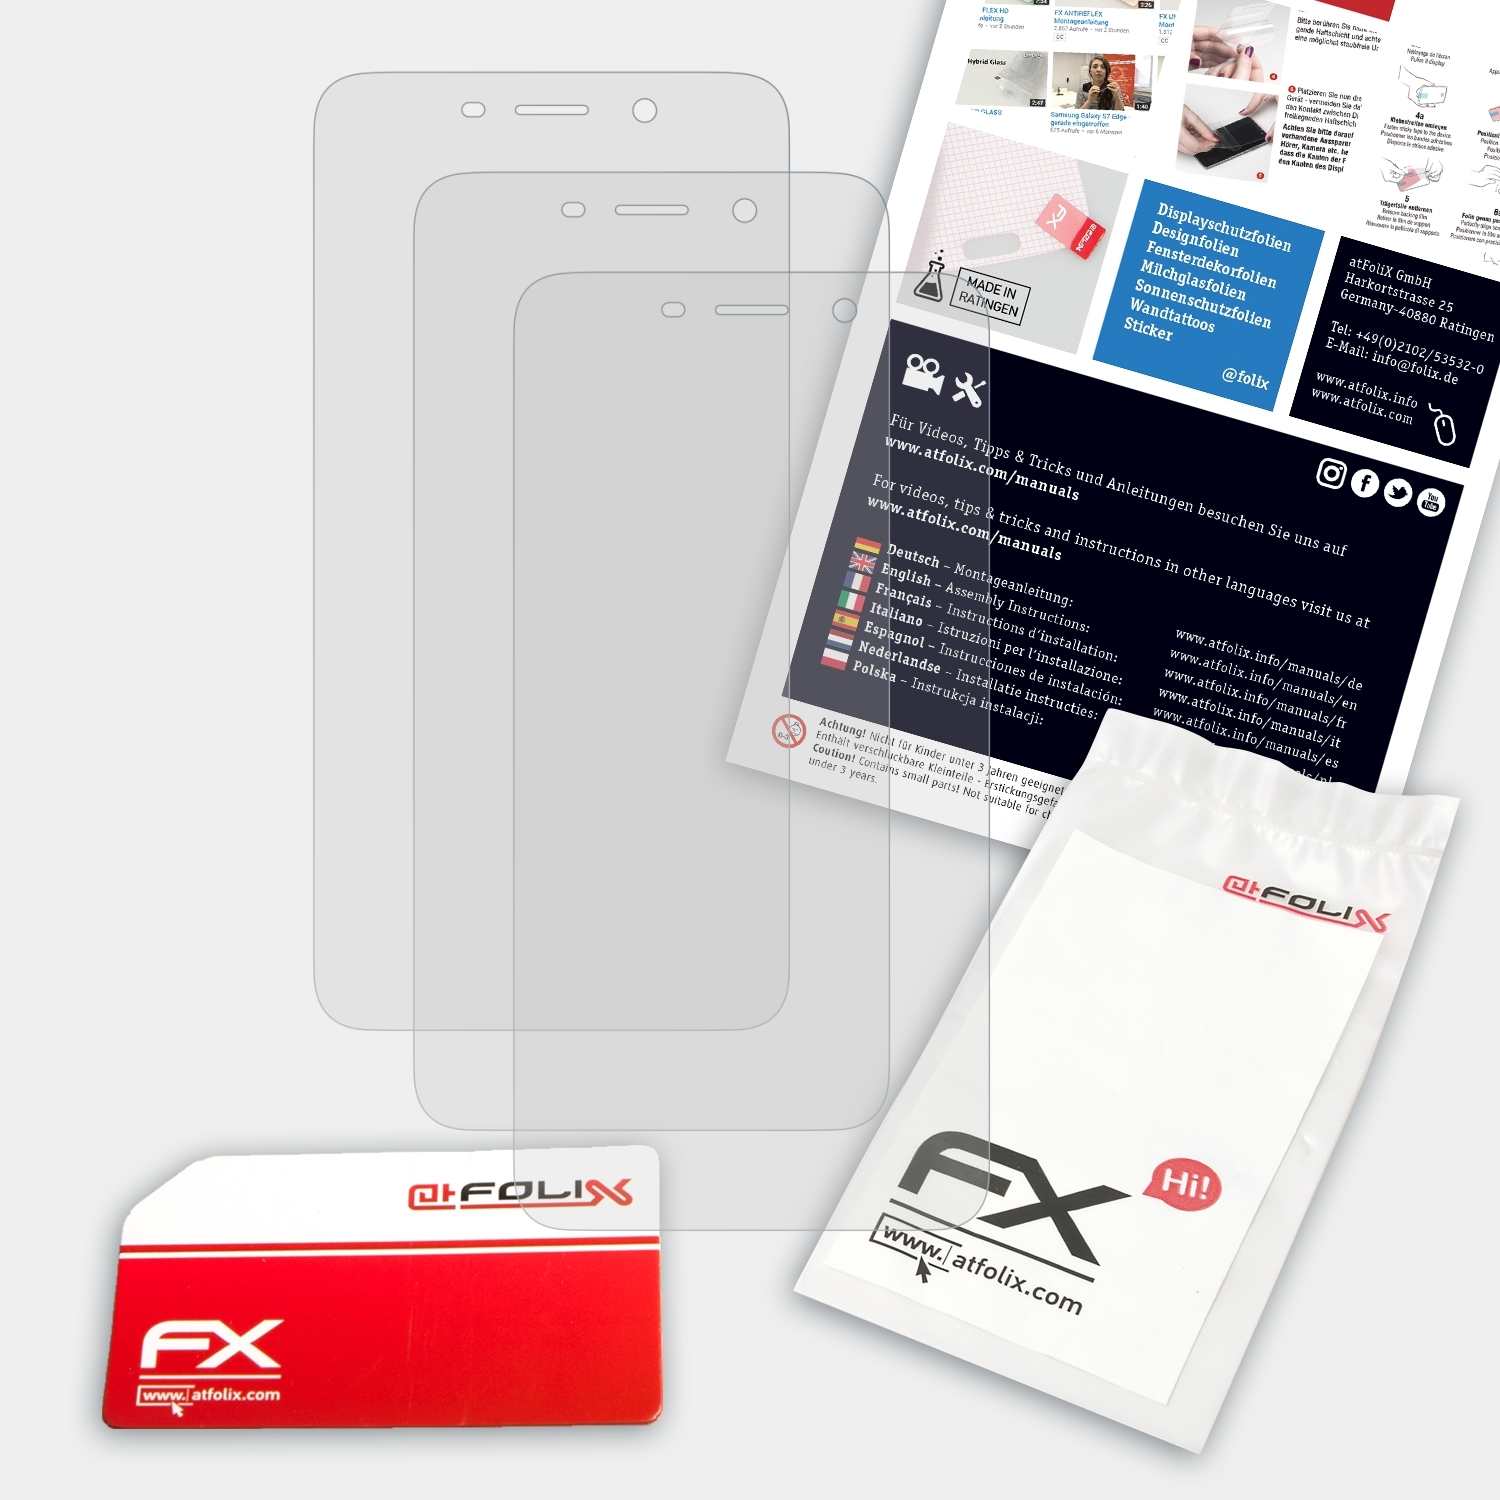 Displayschutz(für FX-Antireflex Note 3) ATFOLIX 3x Coolpad